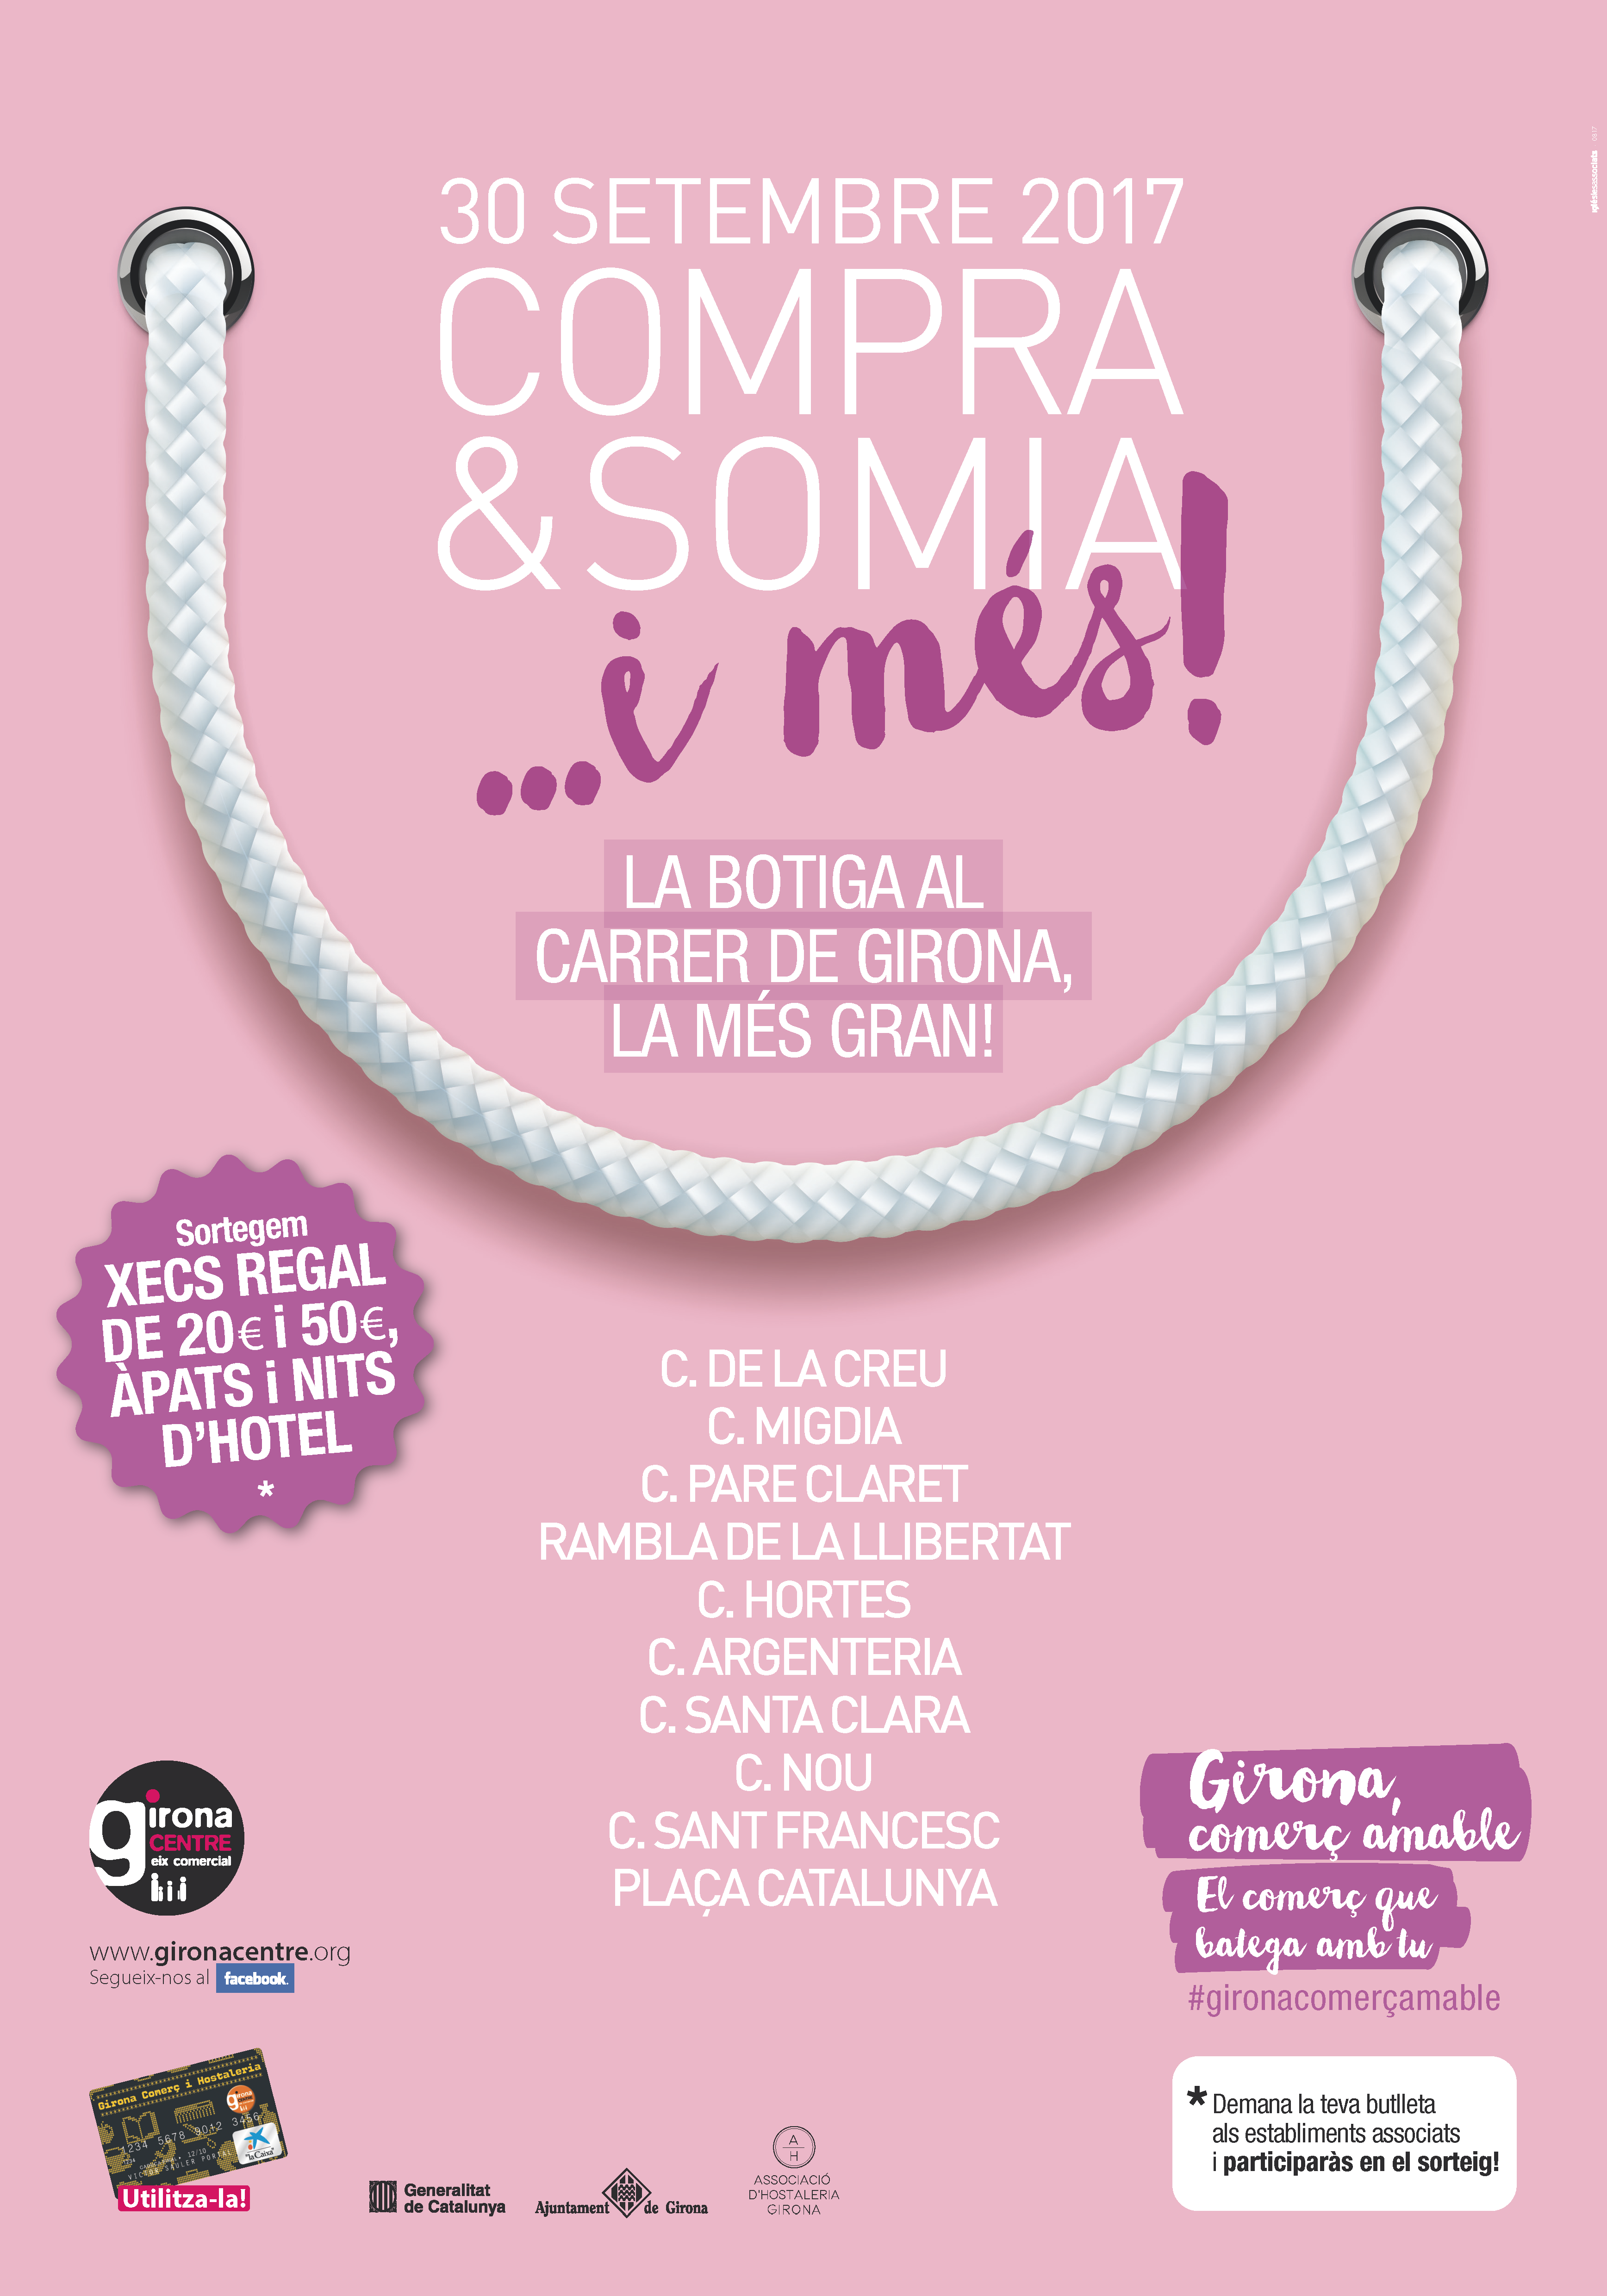 Dissabte 30 de setembre, a Girona: Compra & Somia, la botiga al carrer més gran de la ciutat